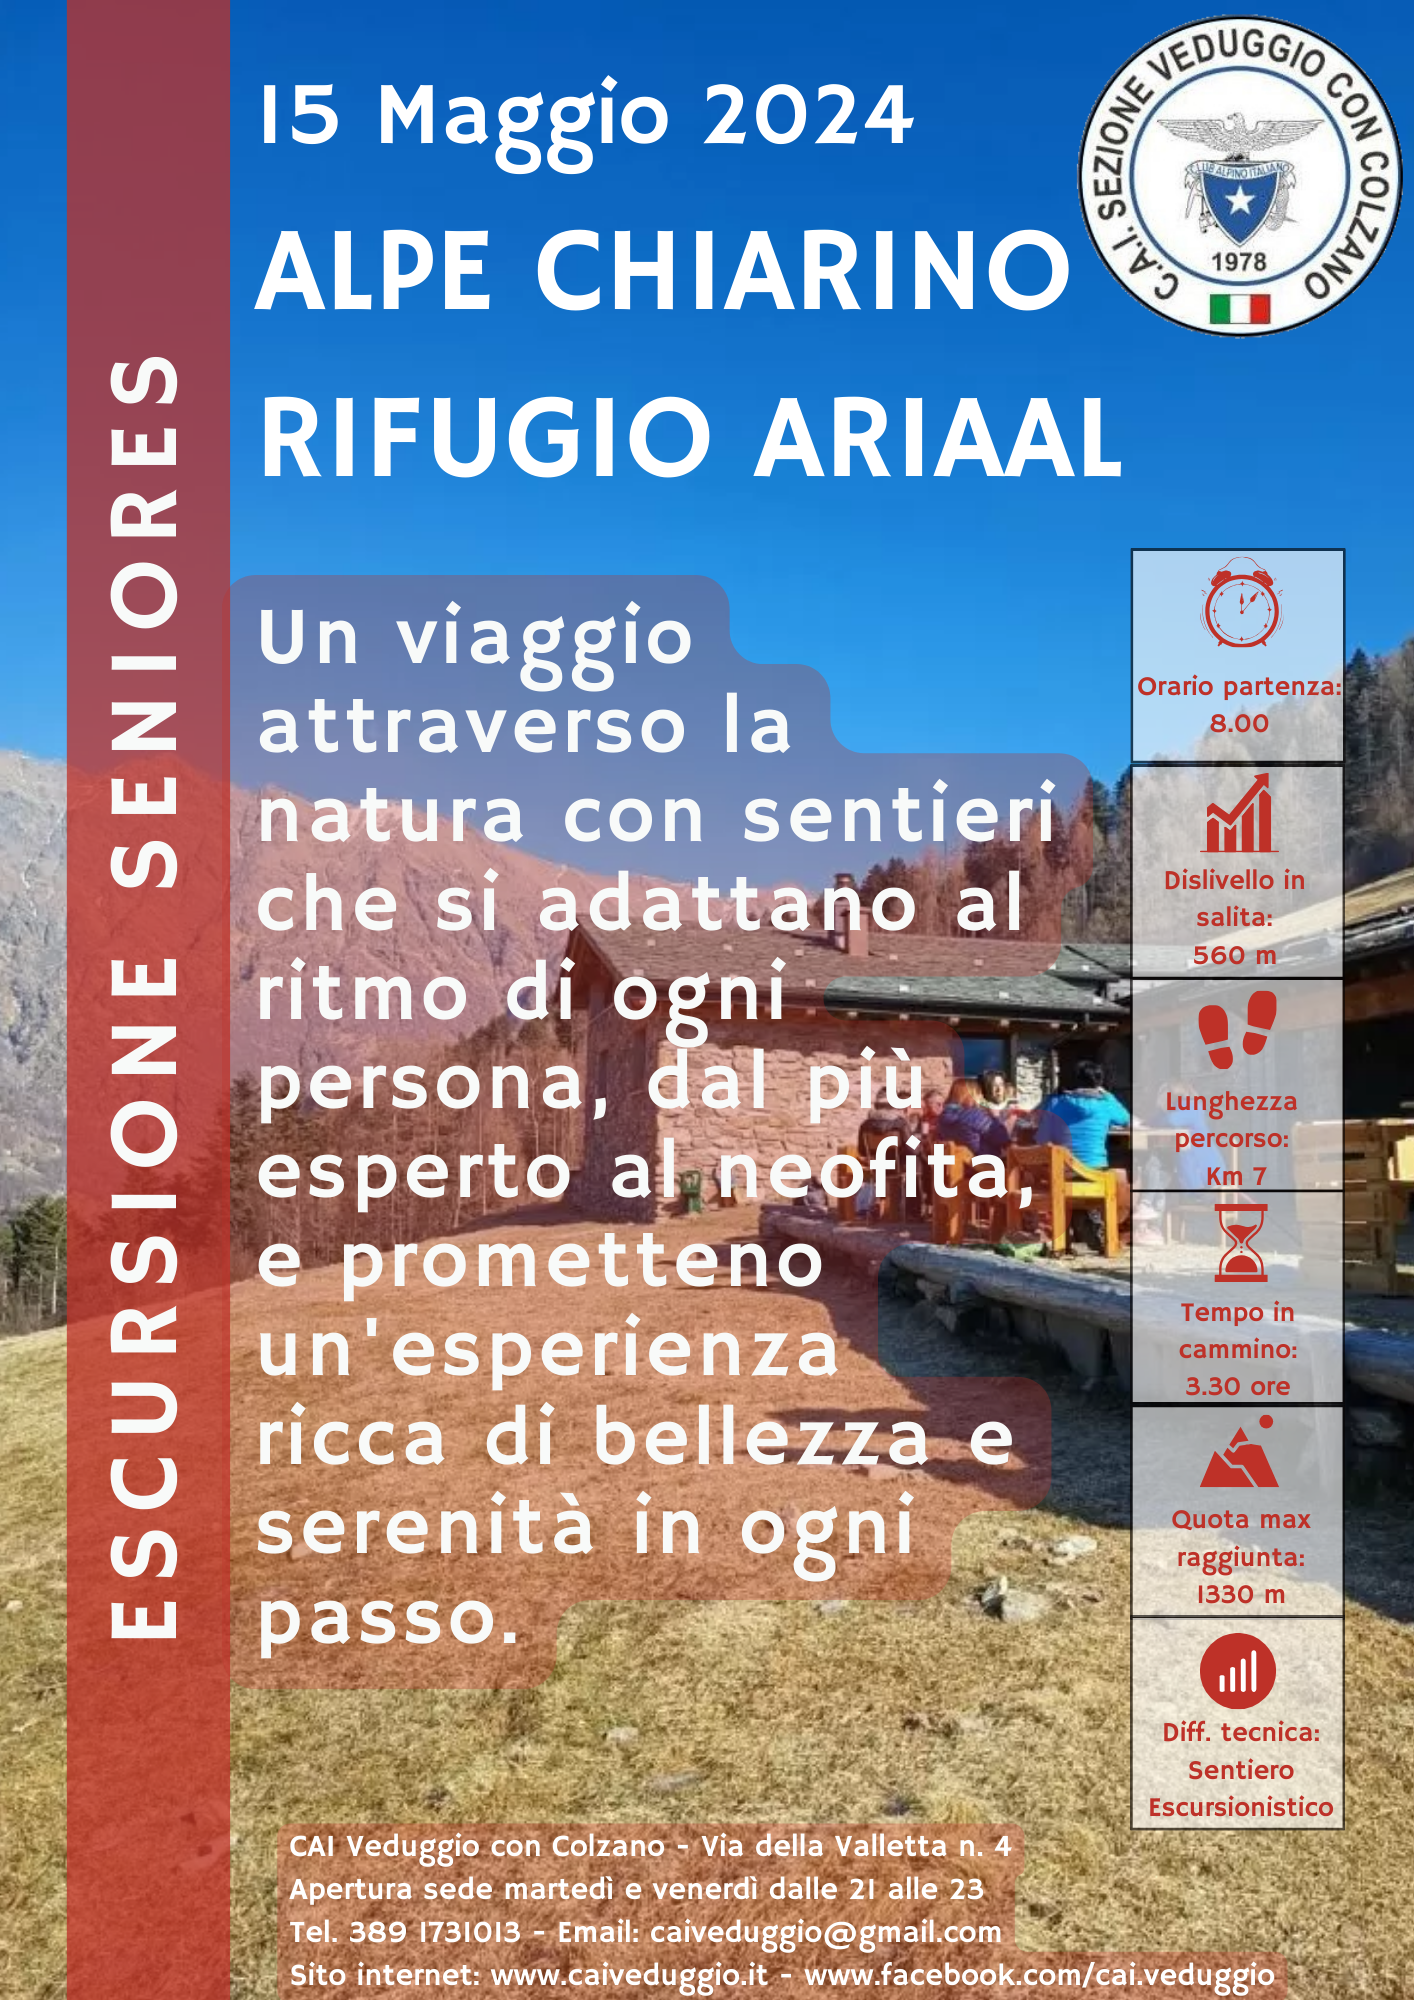 Mercoledì 15 maggio 2024 – Rifugio Ariaal/Alpe Chiarino (Gruppo Seniores)